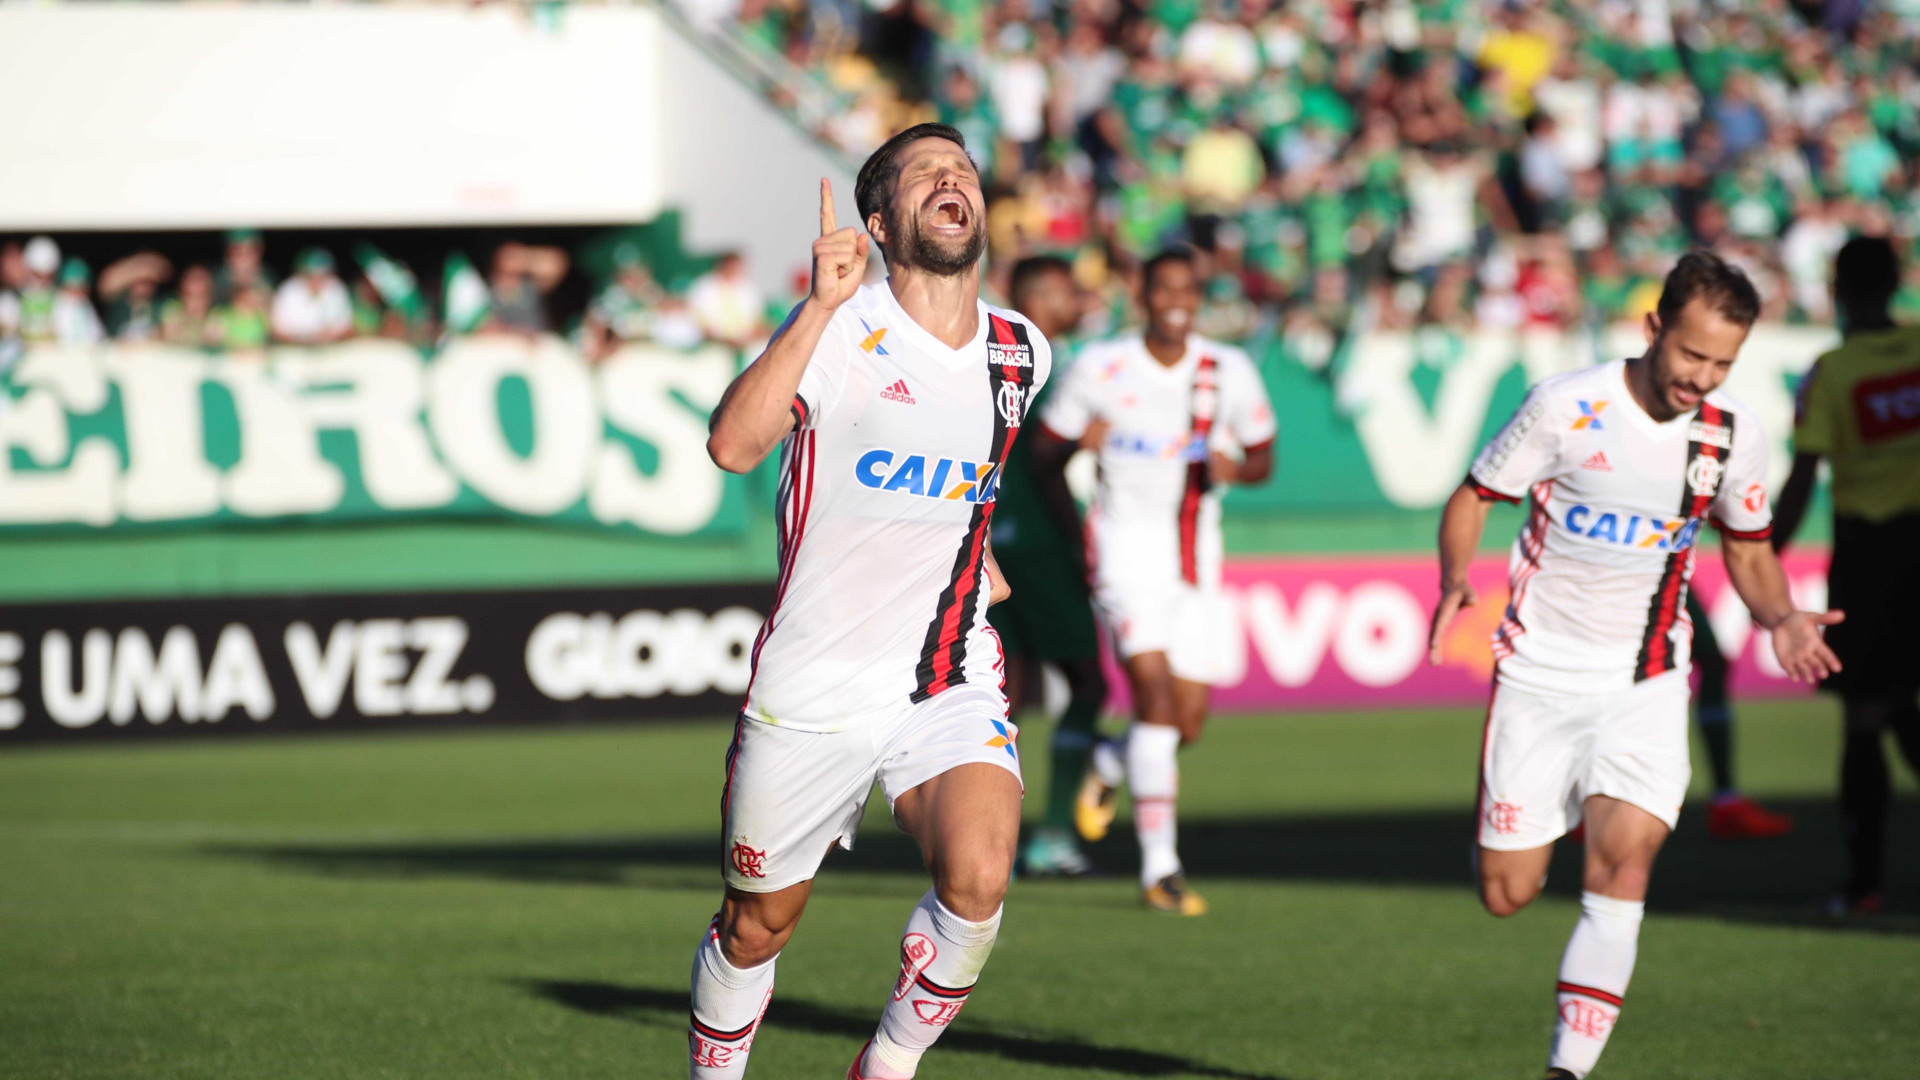 Decisivo, Diego ganha elogios de Rueda após vitória do Flamengo